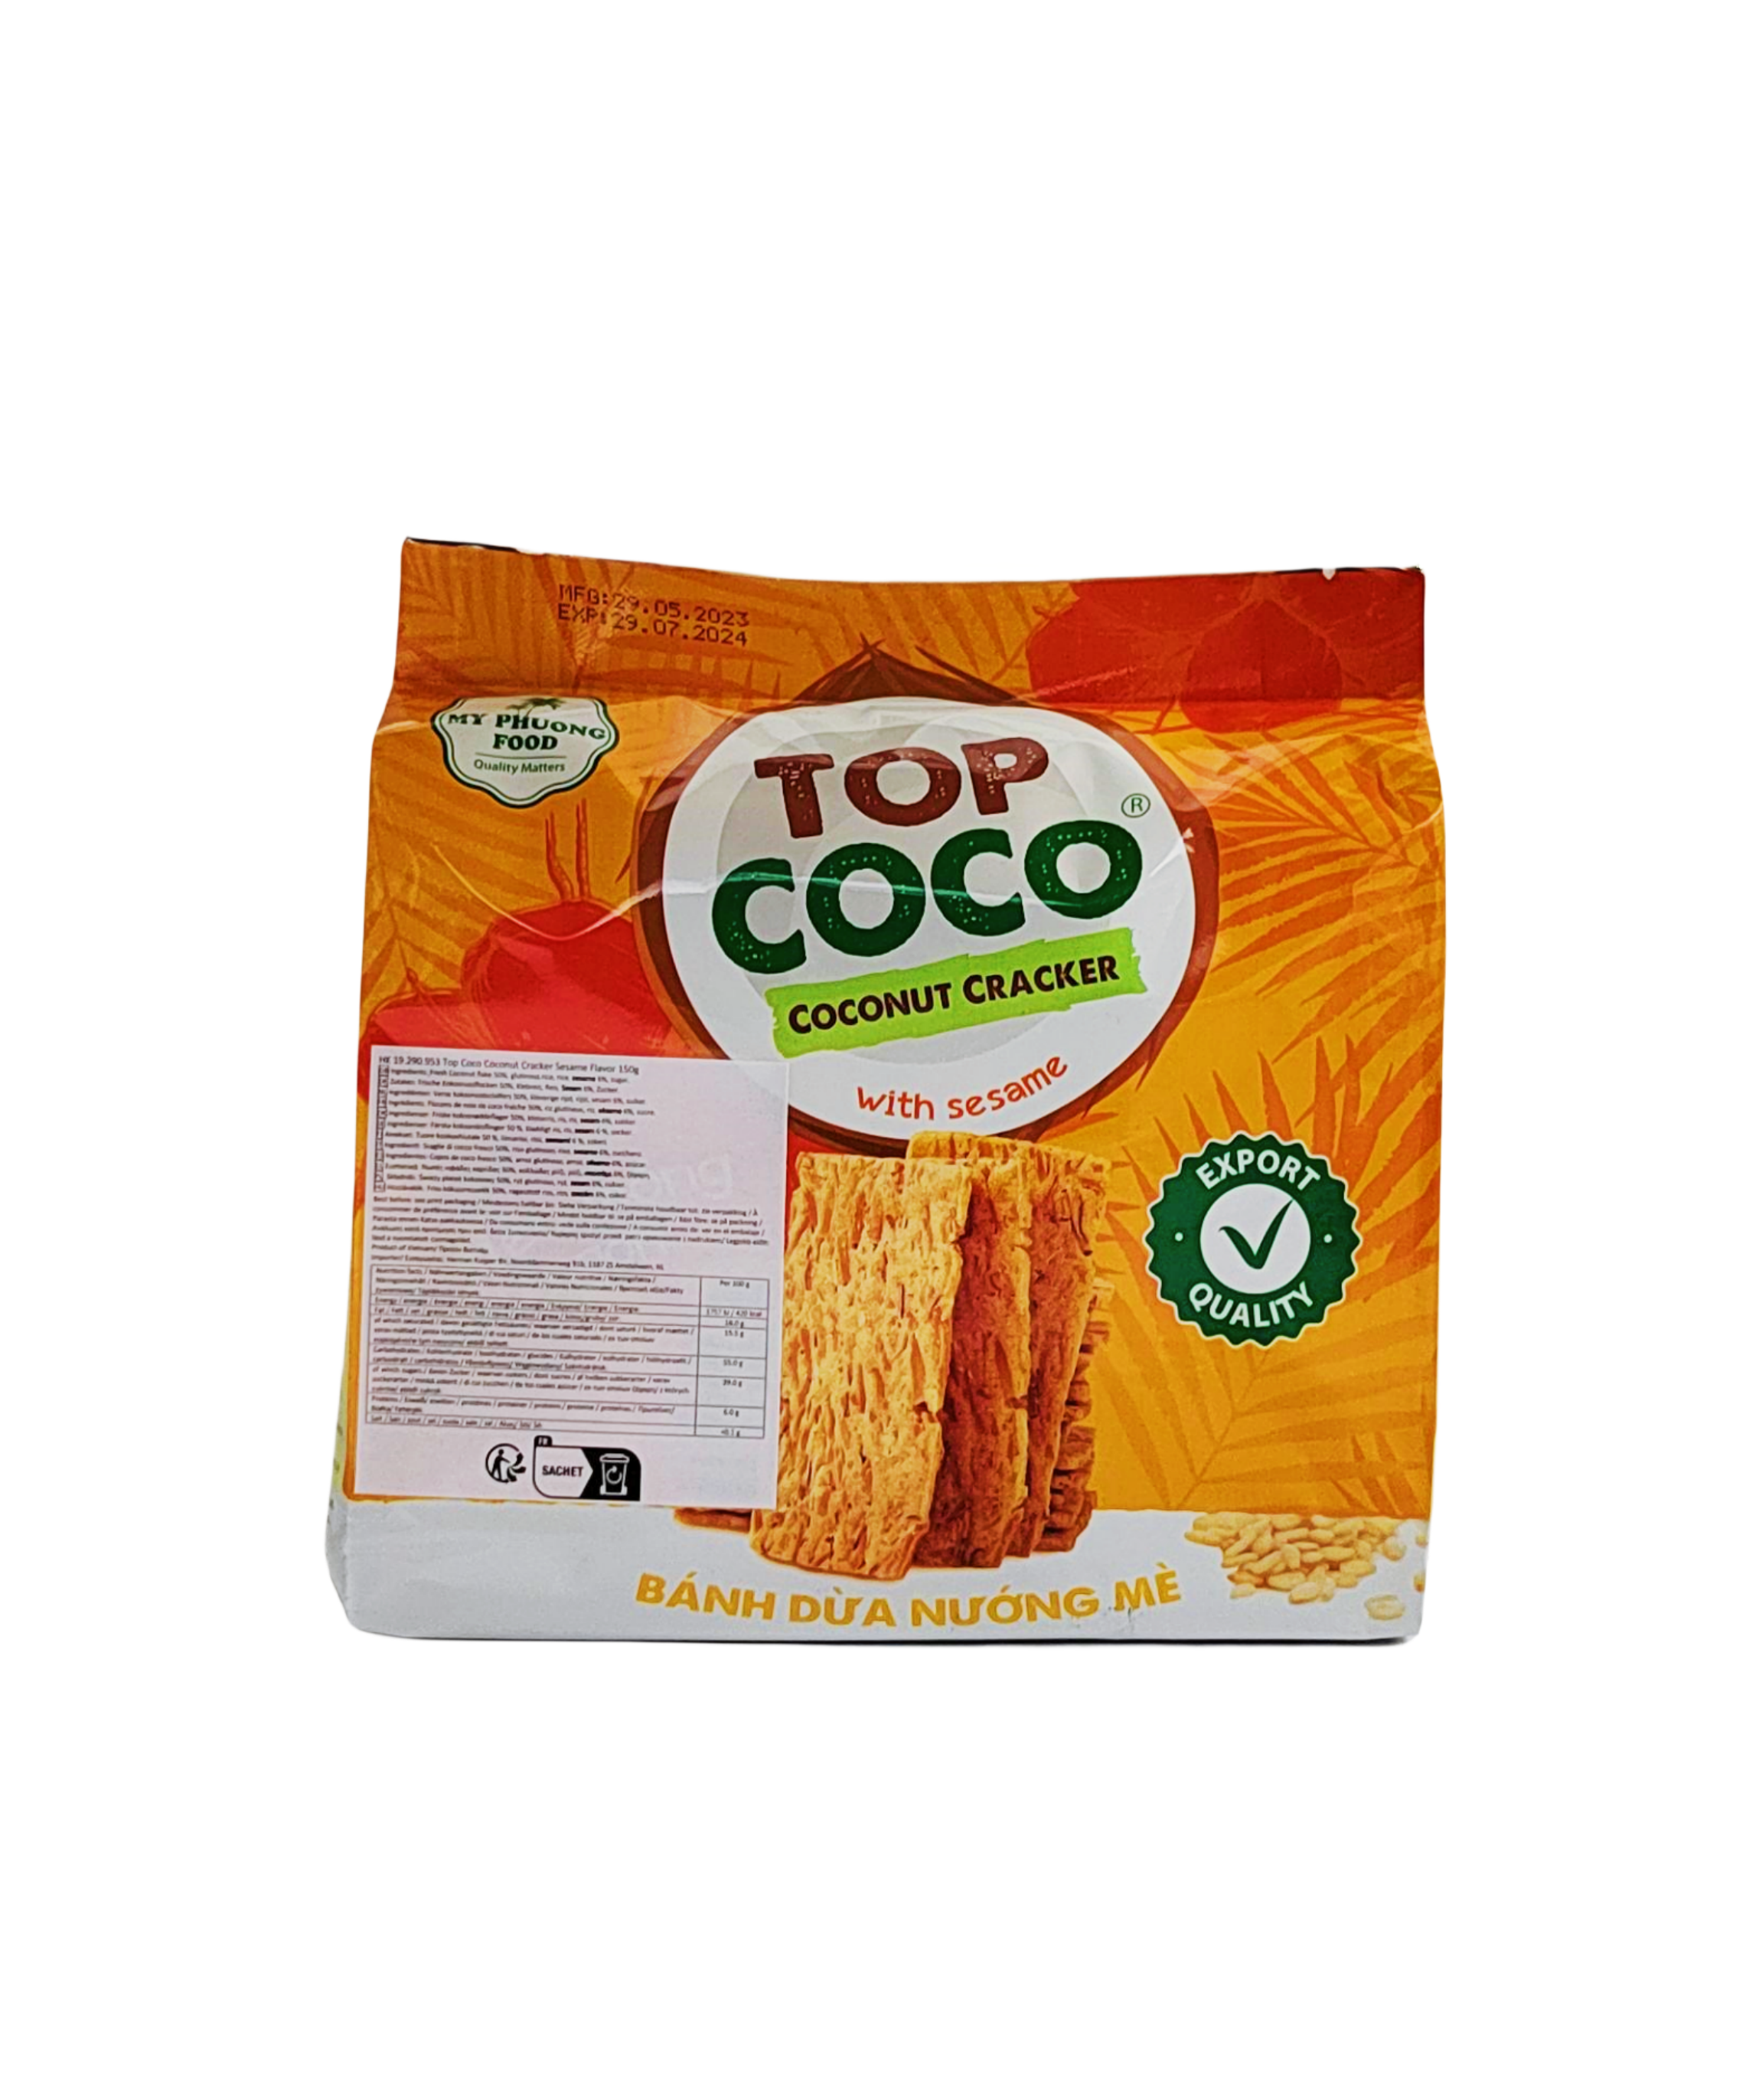 芝麻味椰子饼干 150g Top Coco 越南